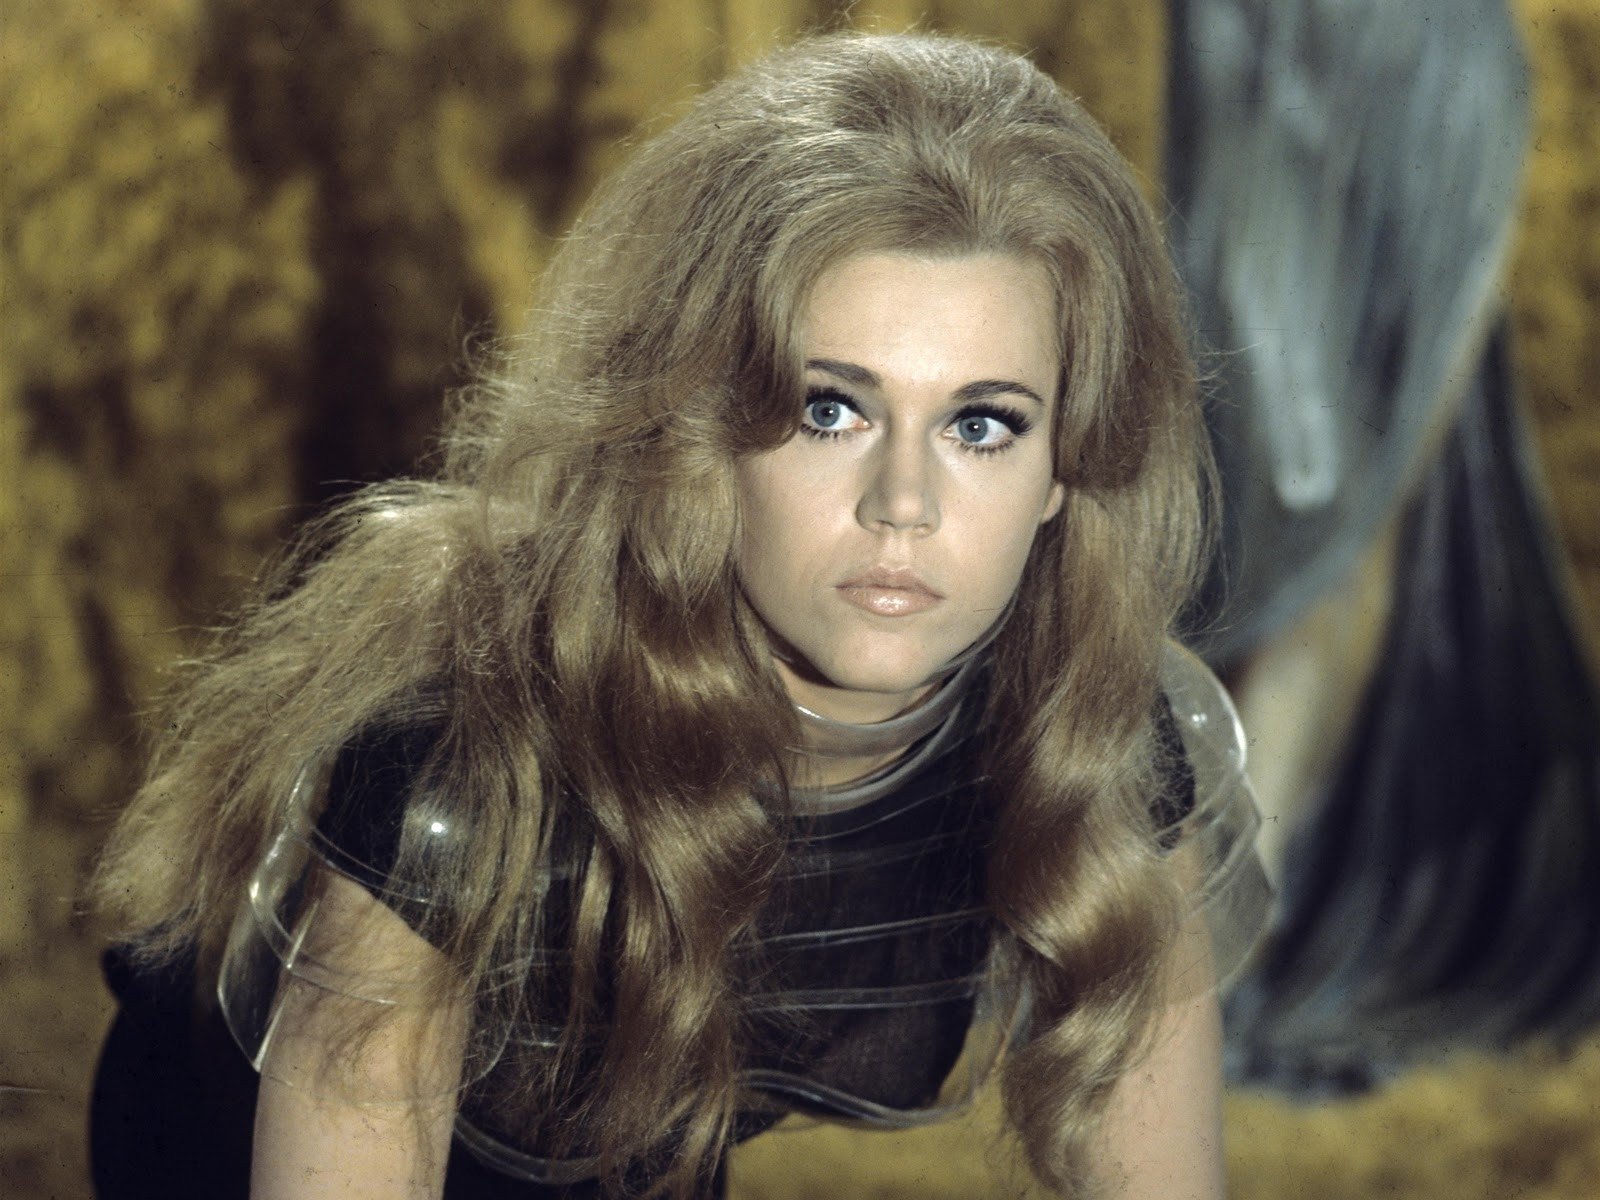 Jane Fonda in Barbarella in 1968 Wallpaper and Background Imagex1200